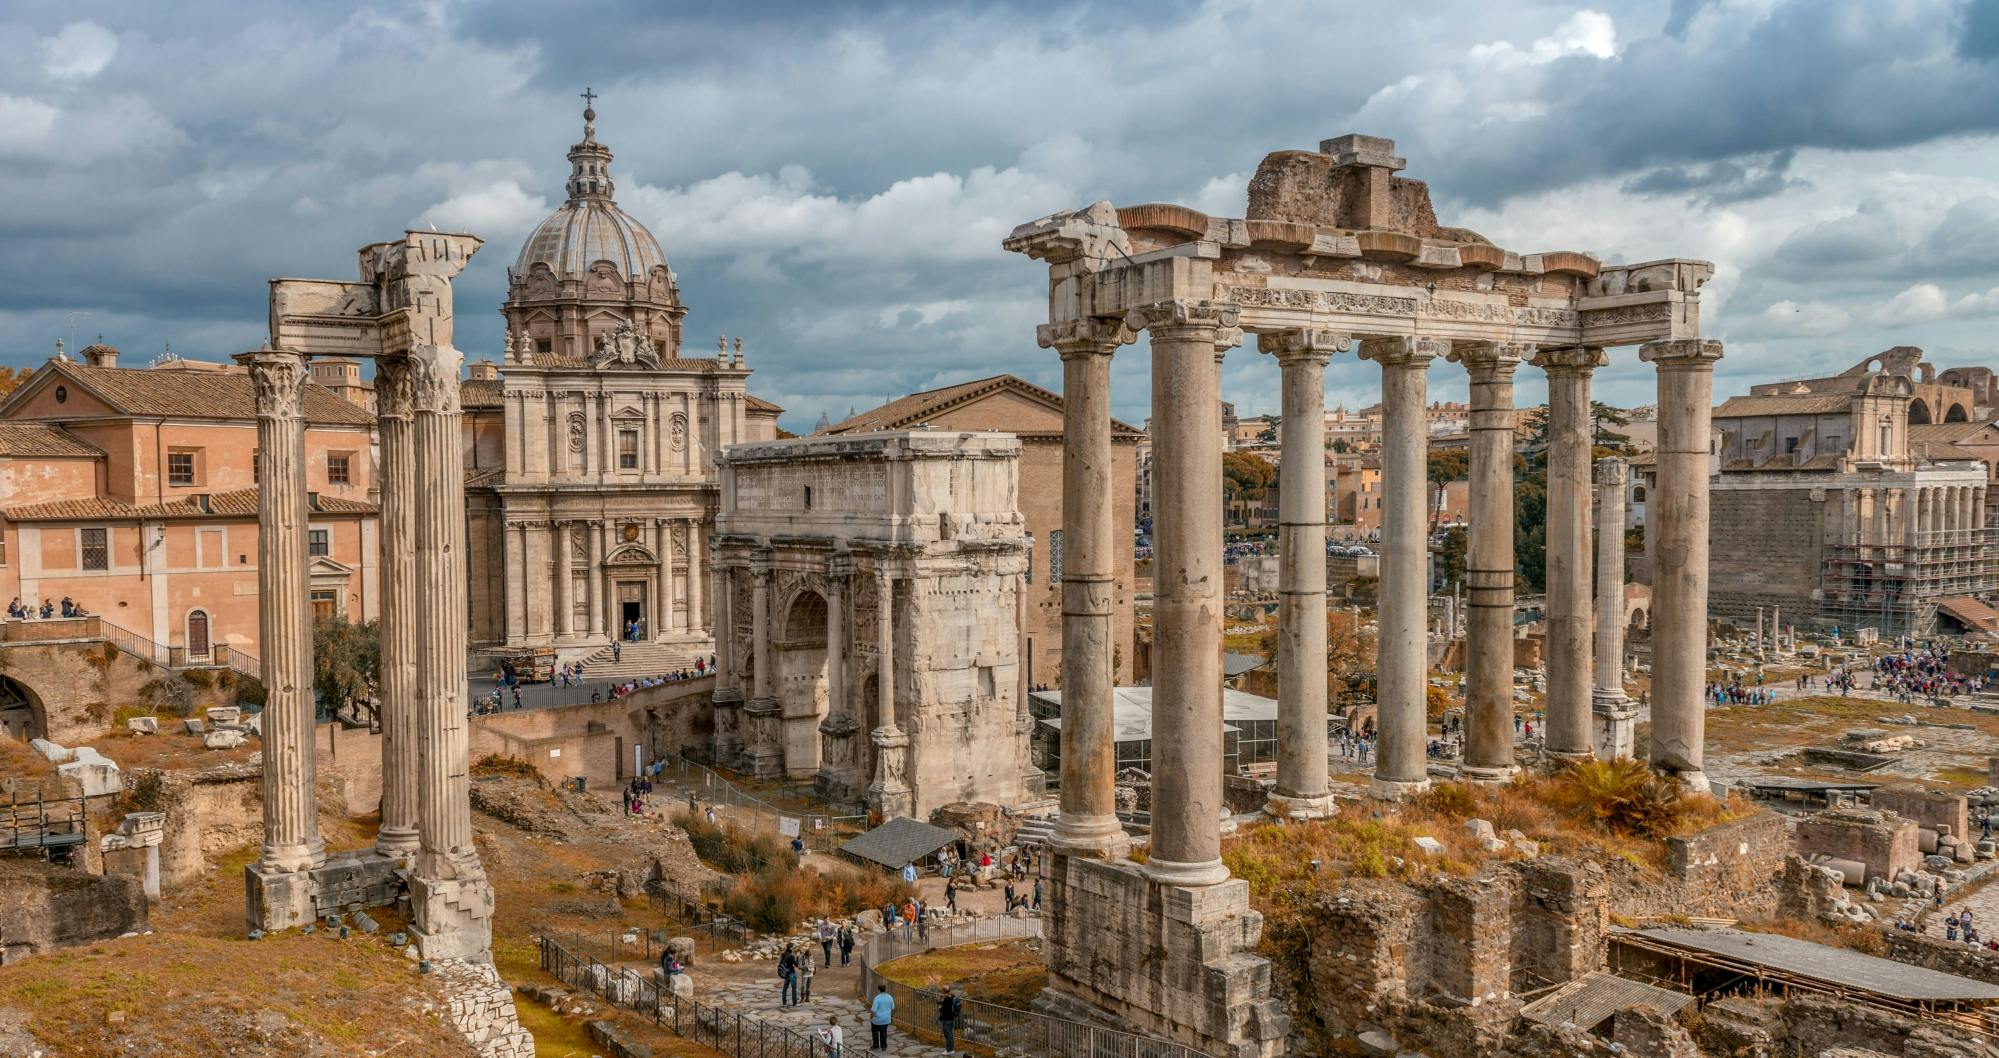 Doświadczenia z Forum Romanum Palatynu i multimedialne wideo